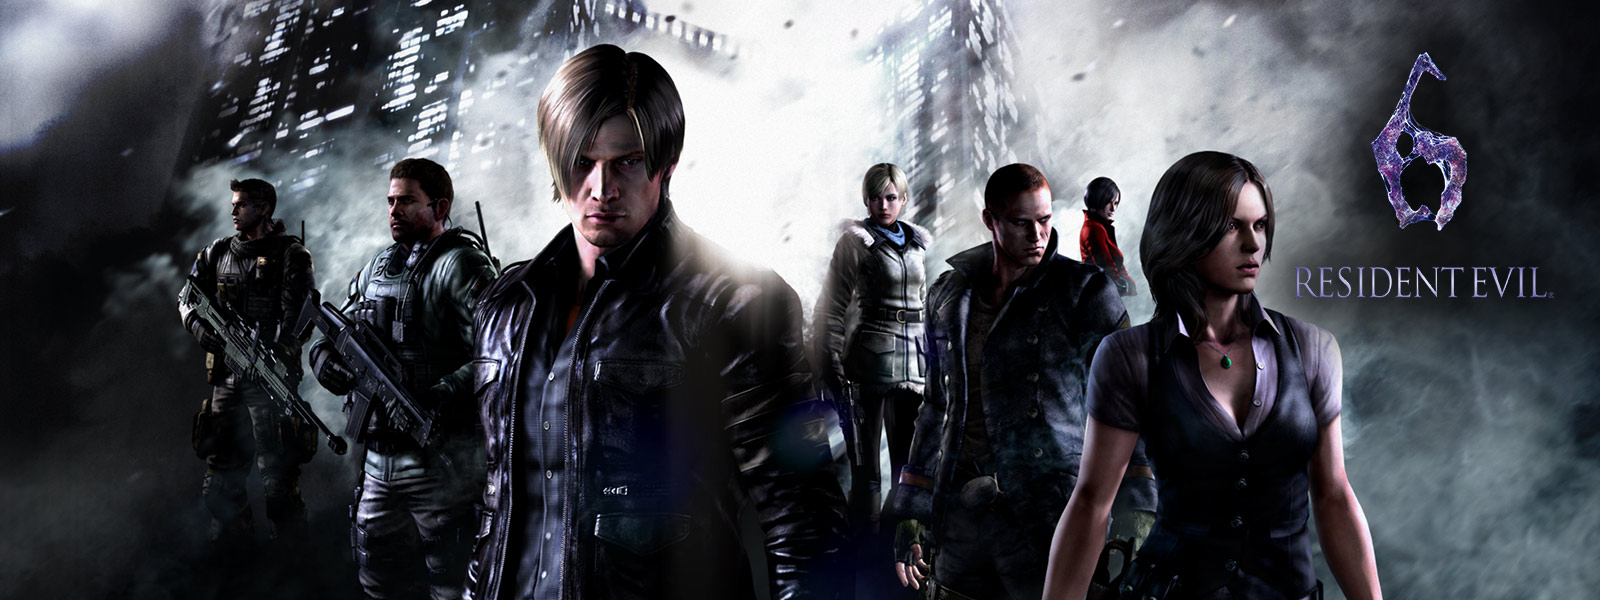 Resident Evil 6, tous les personnages de Resident Evil debout devant des gratte-ciel menaçants